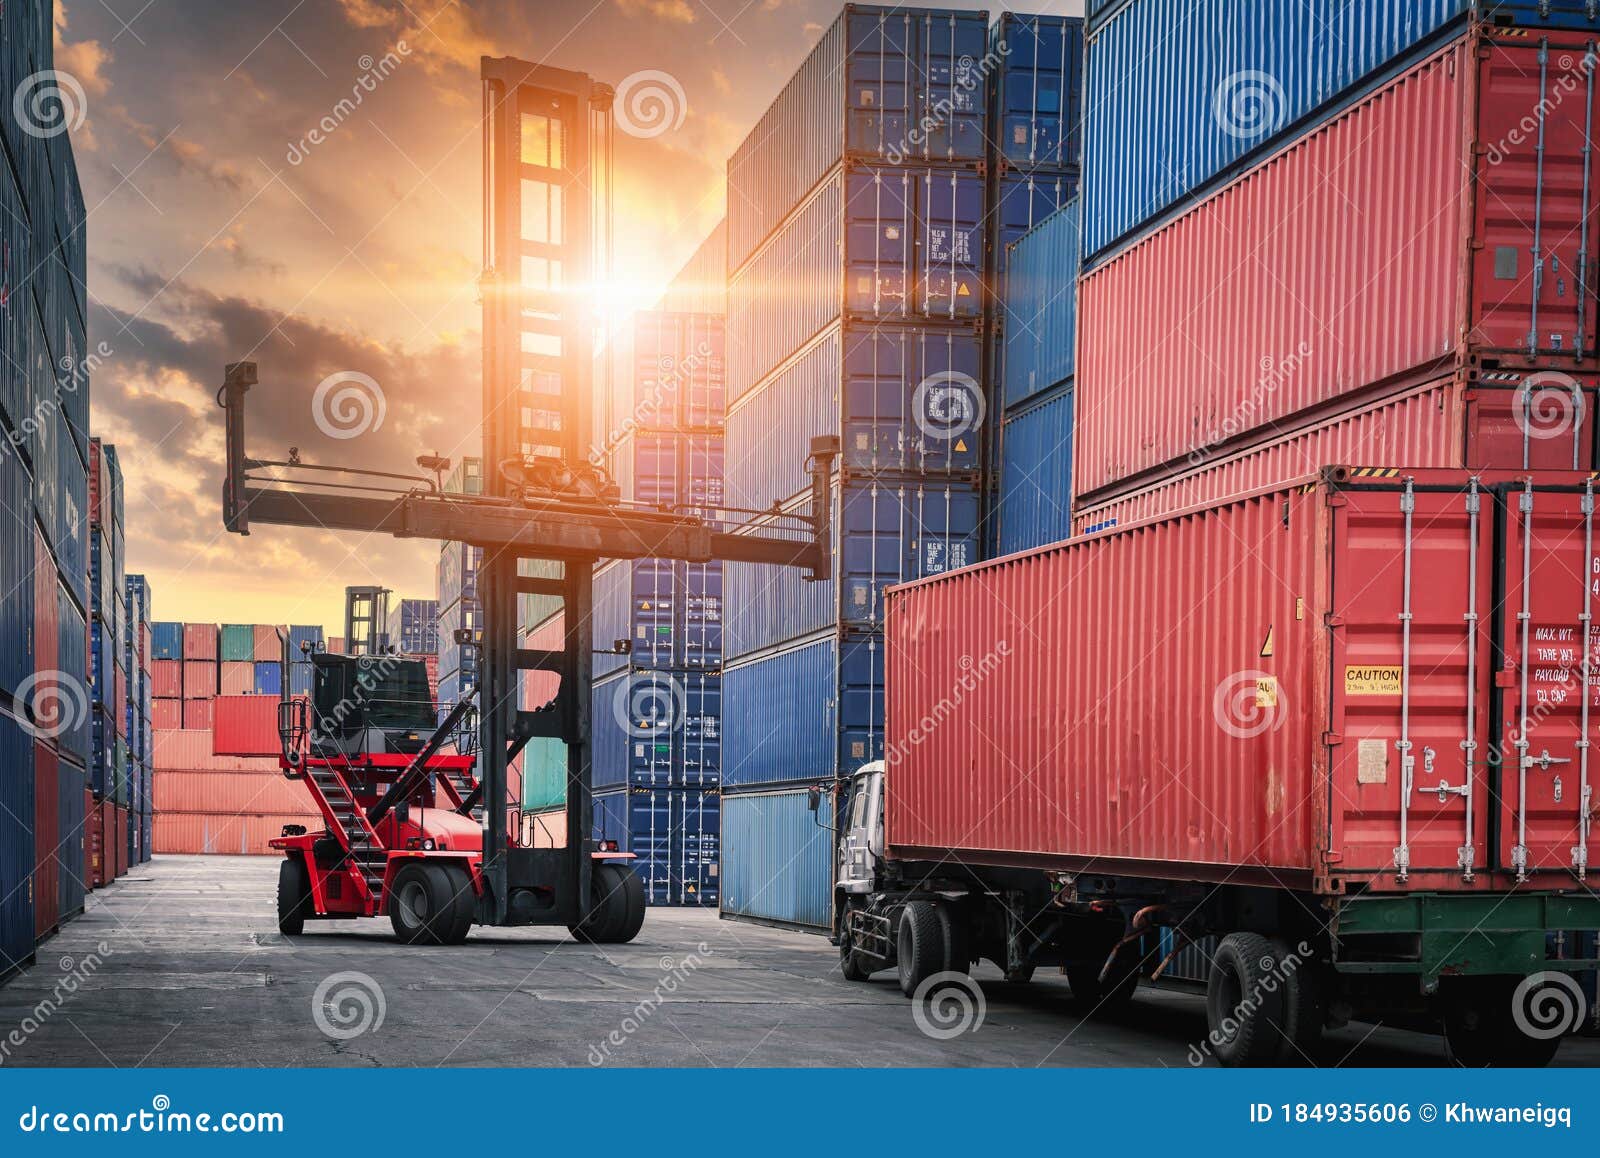 puerto de carga de contenedores astillero manejo de almacenamiento de la  industria del transporte logístico. fila